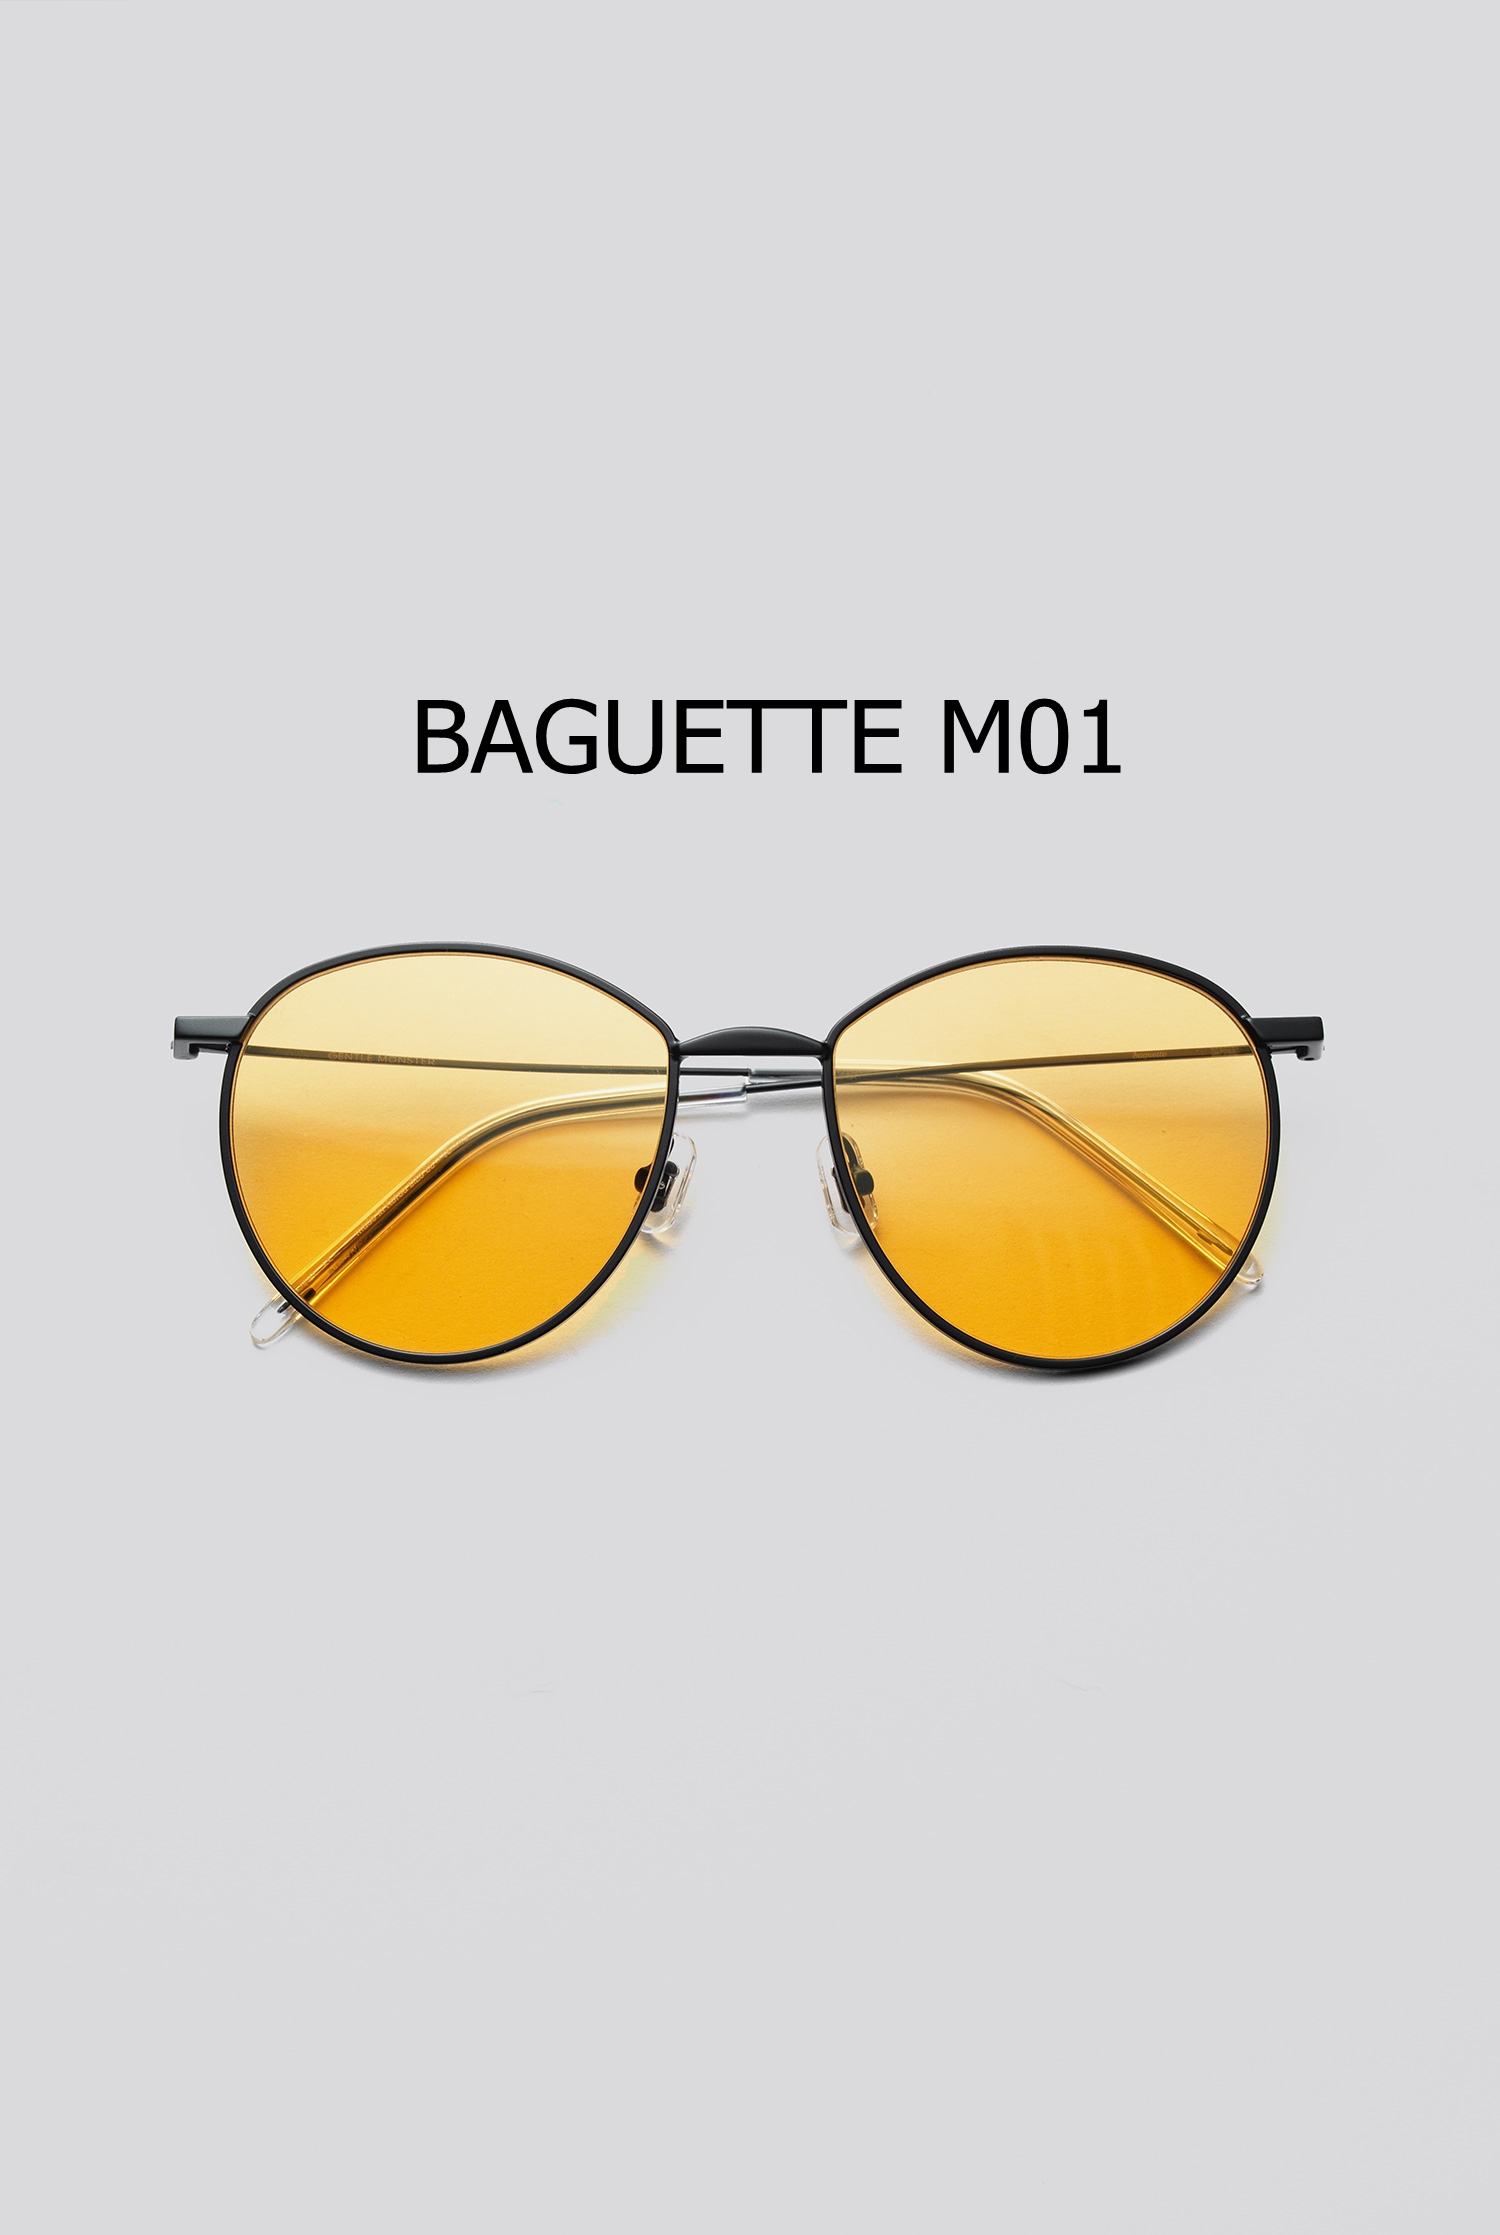 BAGUETTE M01 